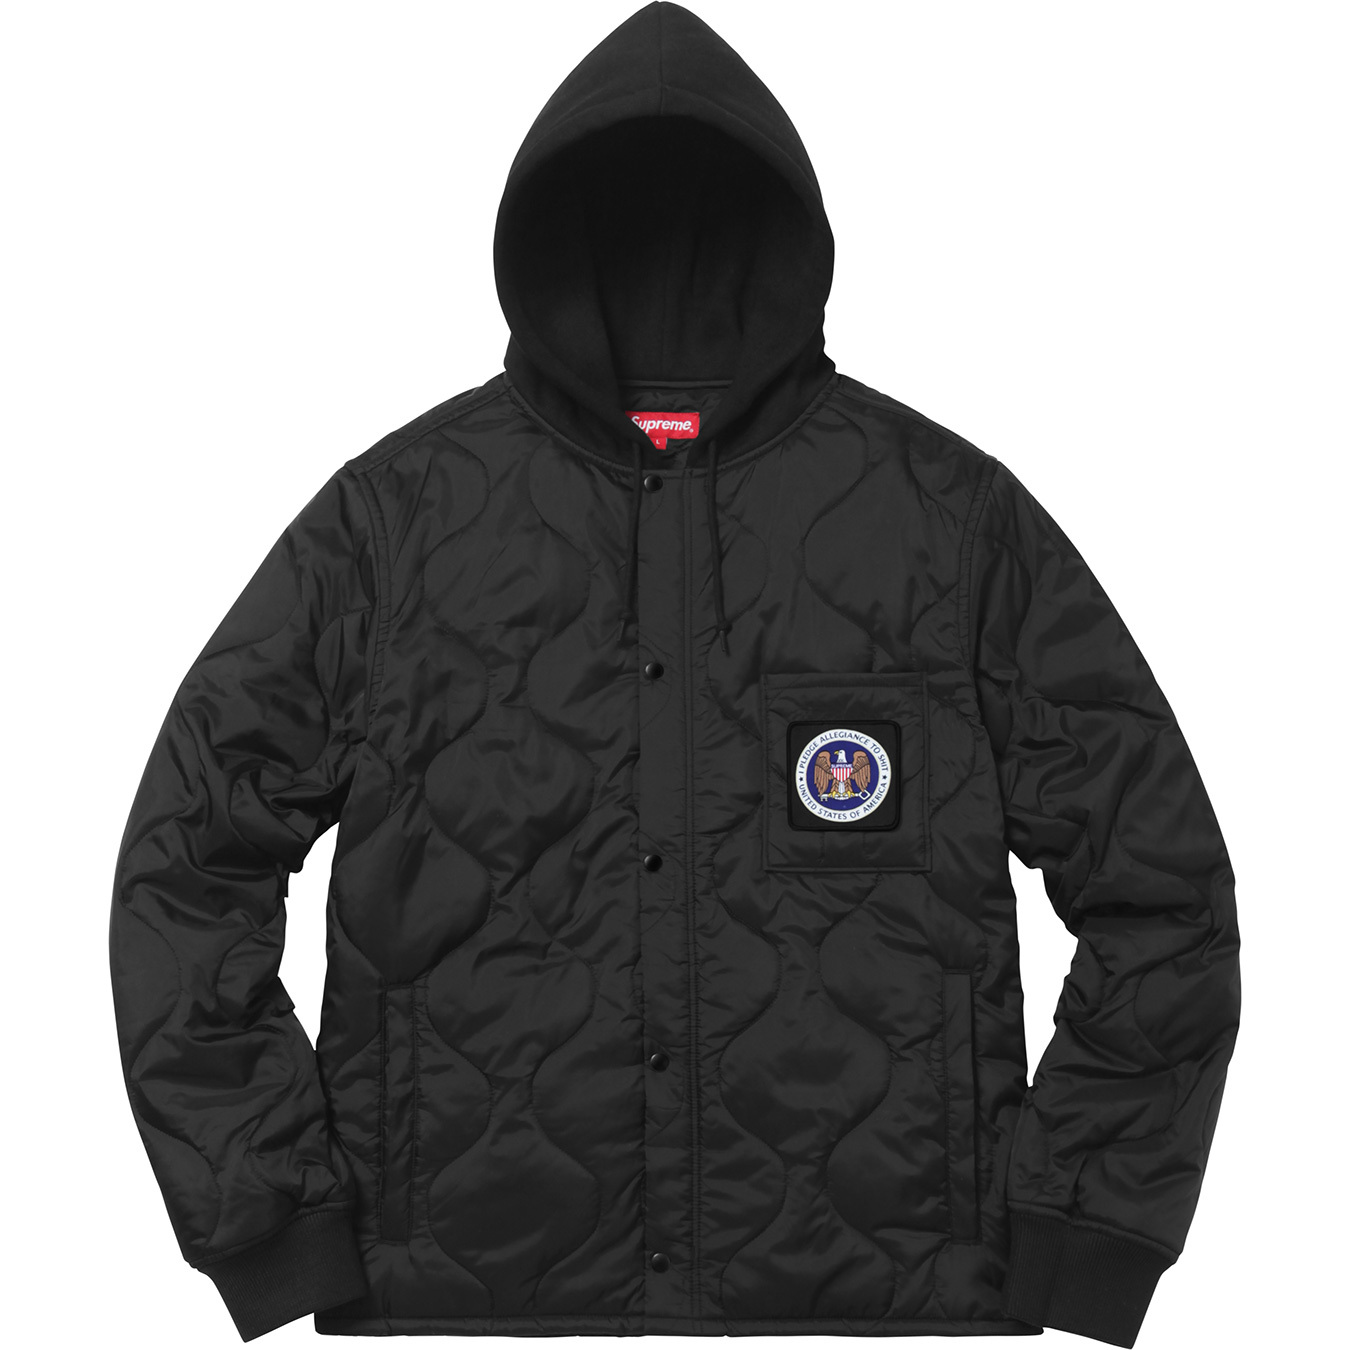 カラーブラックSupreme quilted liner hooded jacket S 新品 ...